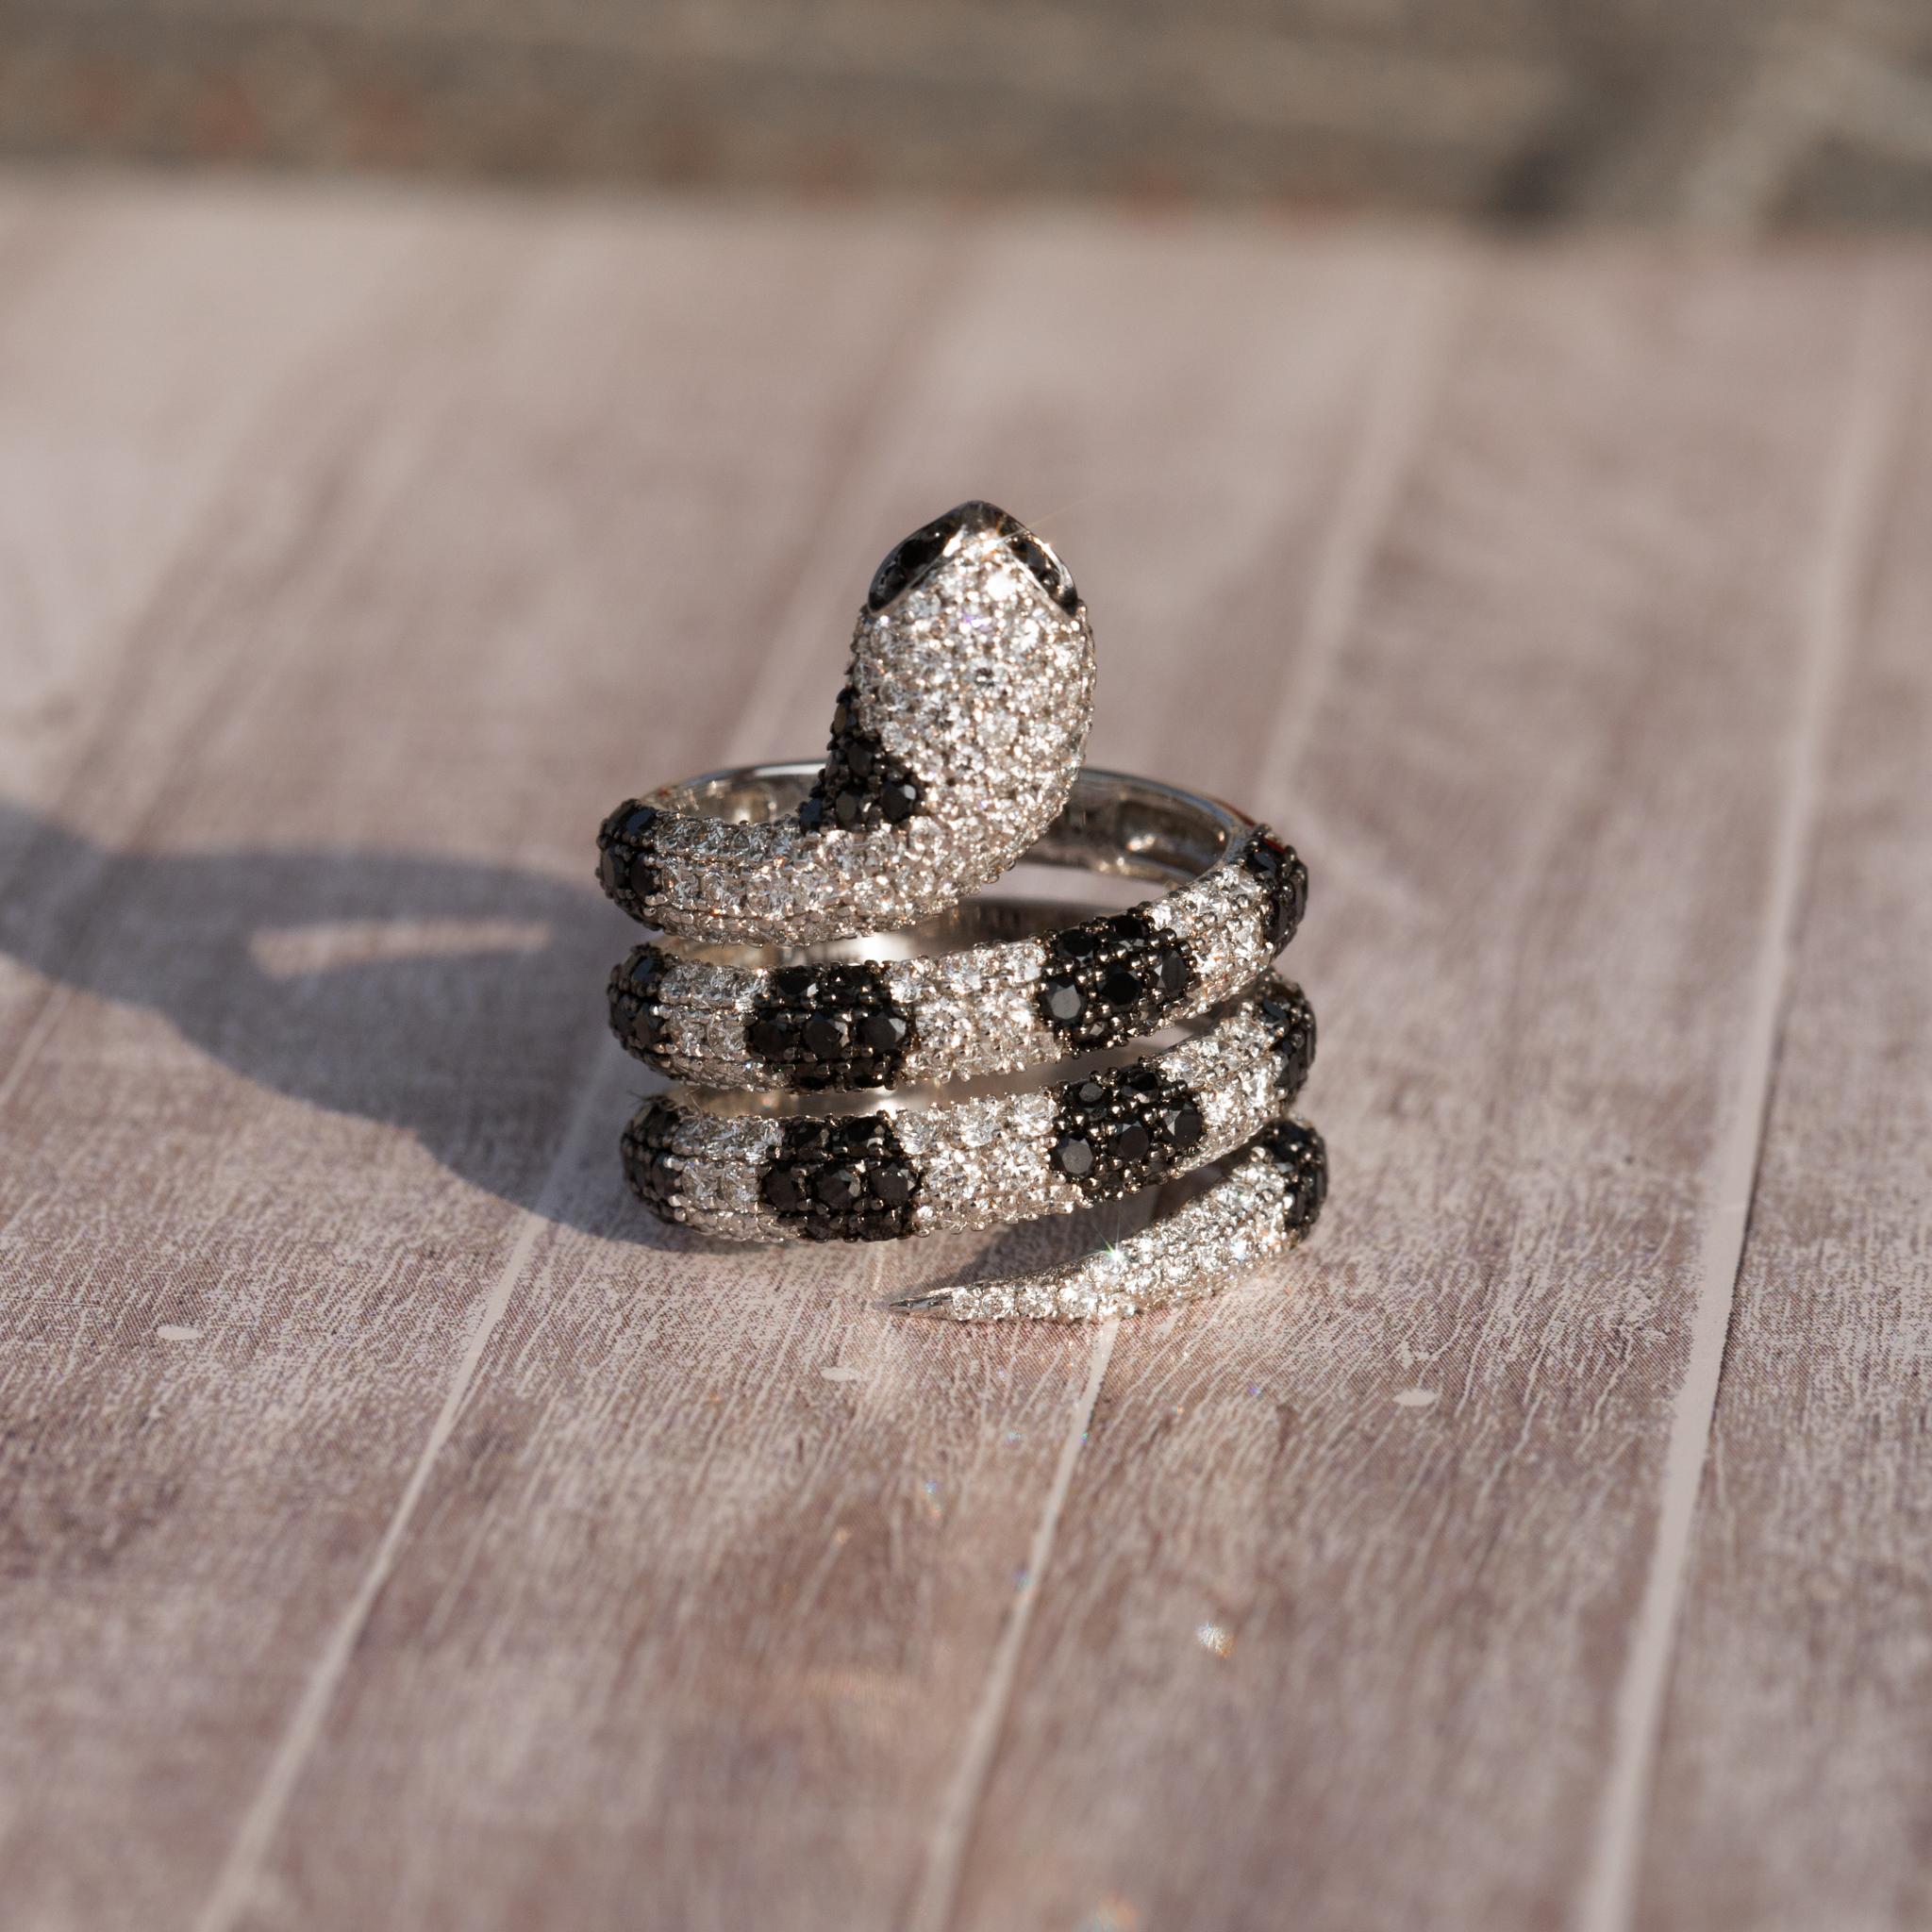 Iced out Diamant Pave Schlangenring aus 18k Massivgold einzigartiger Ring

Erhältlich in 18k Weißgold.

Das gleiche Design kann auch mit anderen Edelsteinen auf Anfrage hergestellt werden.

Einzelheiten zum Produkt:

- Massiv Gold

- Diamant - ca.